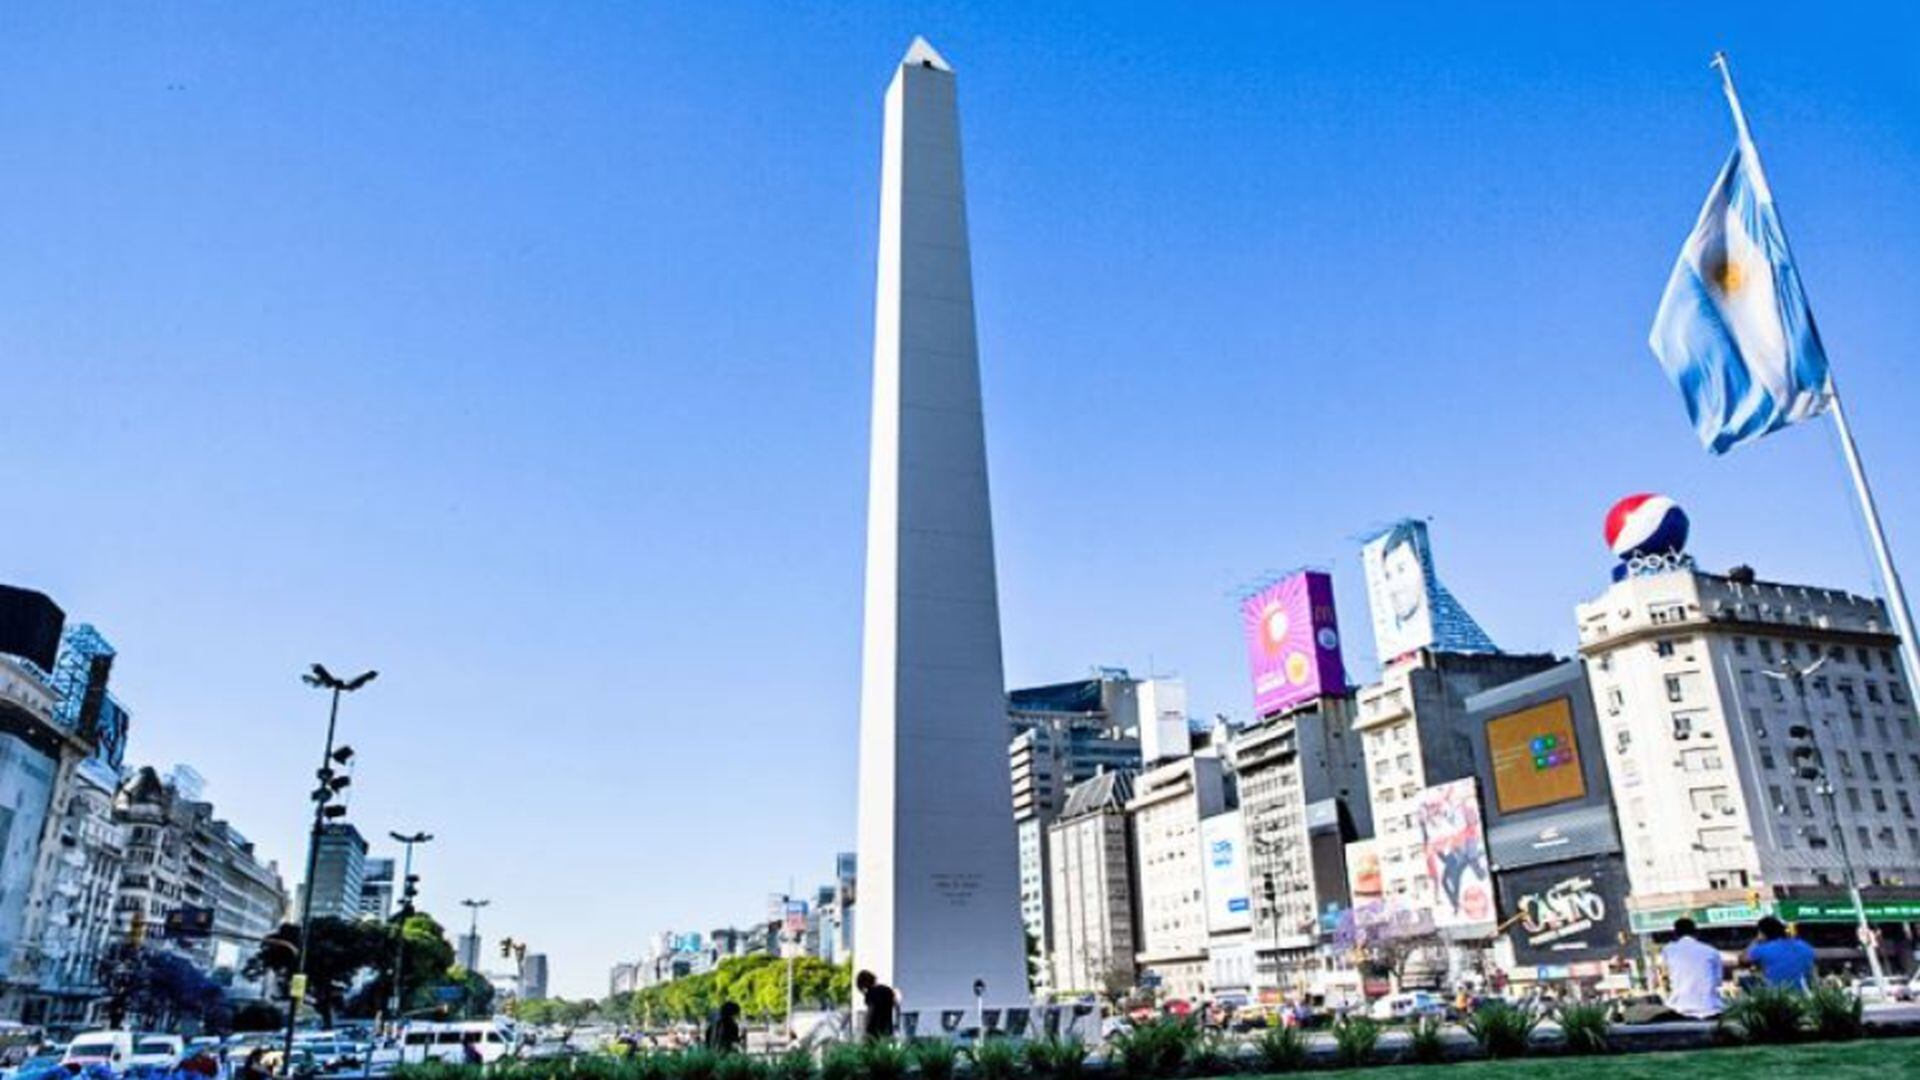 Argentina - Buenos Aires - turismo -  dólar blue - historias - Perú - 18 enero